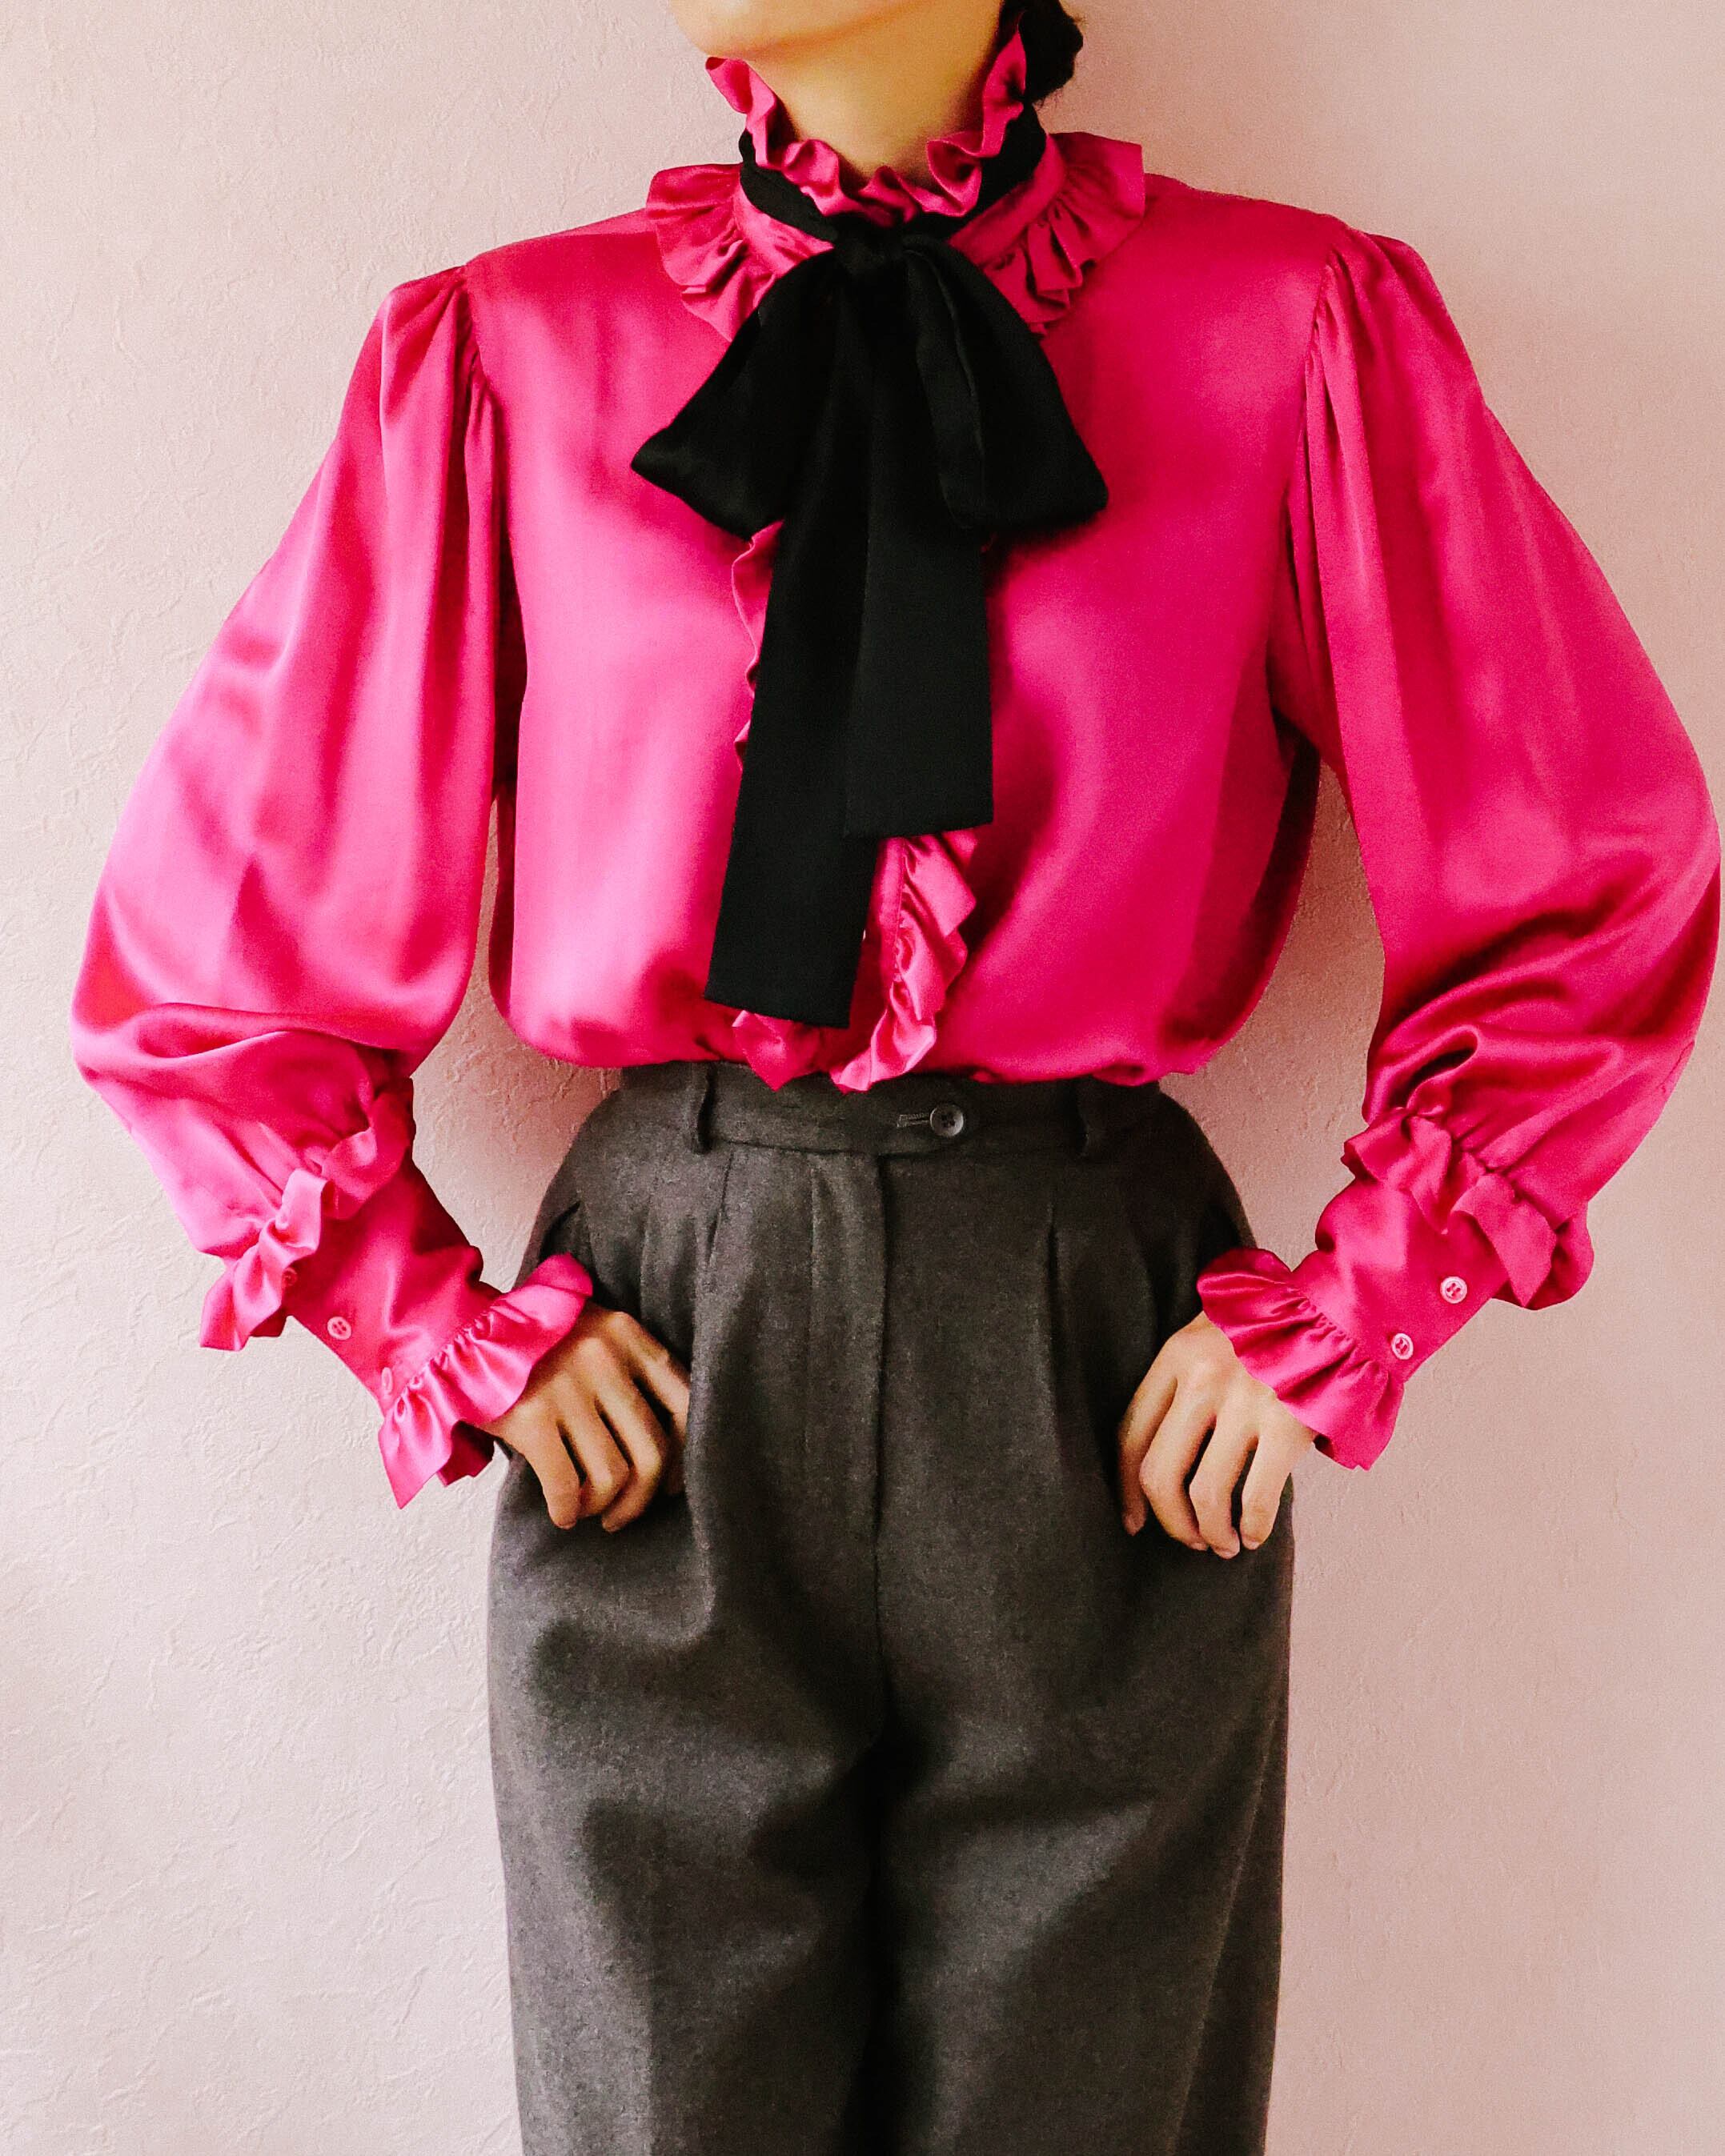 Yves Saint Laurent rive gauche pink blouse | VINIVINI ONLINE SHOP